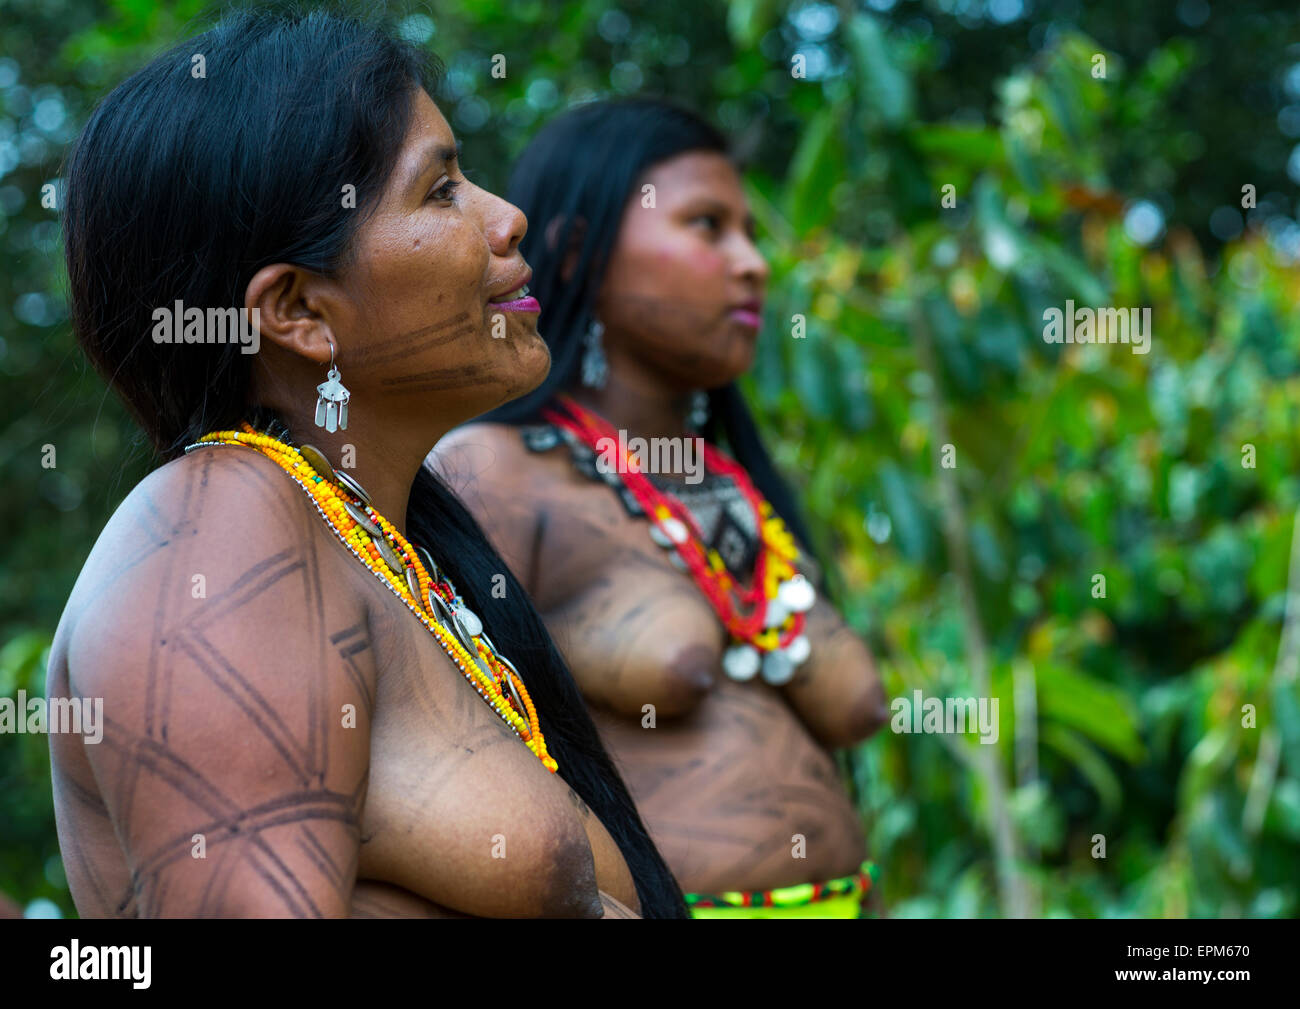 Nude Photos Of Panama Panama Women 62